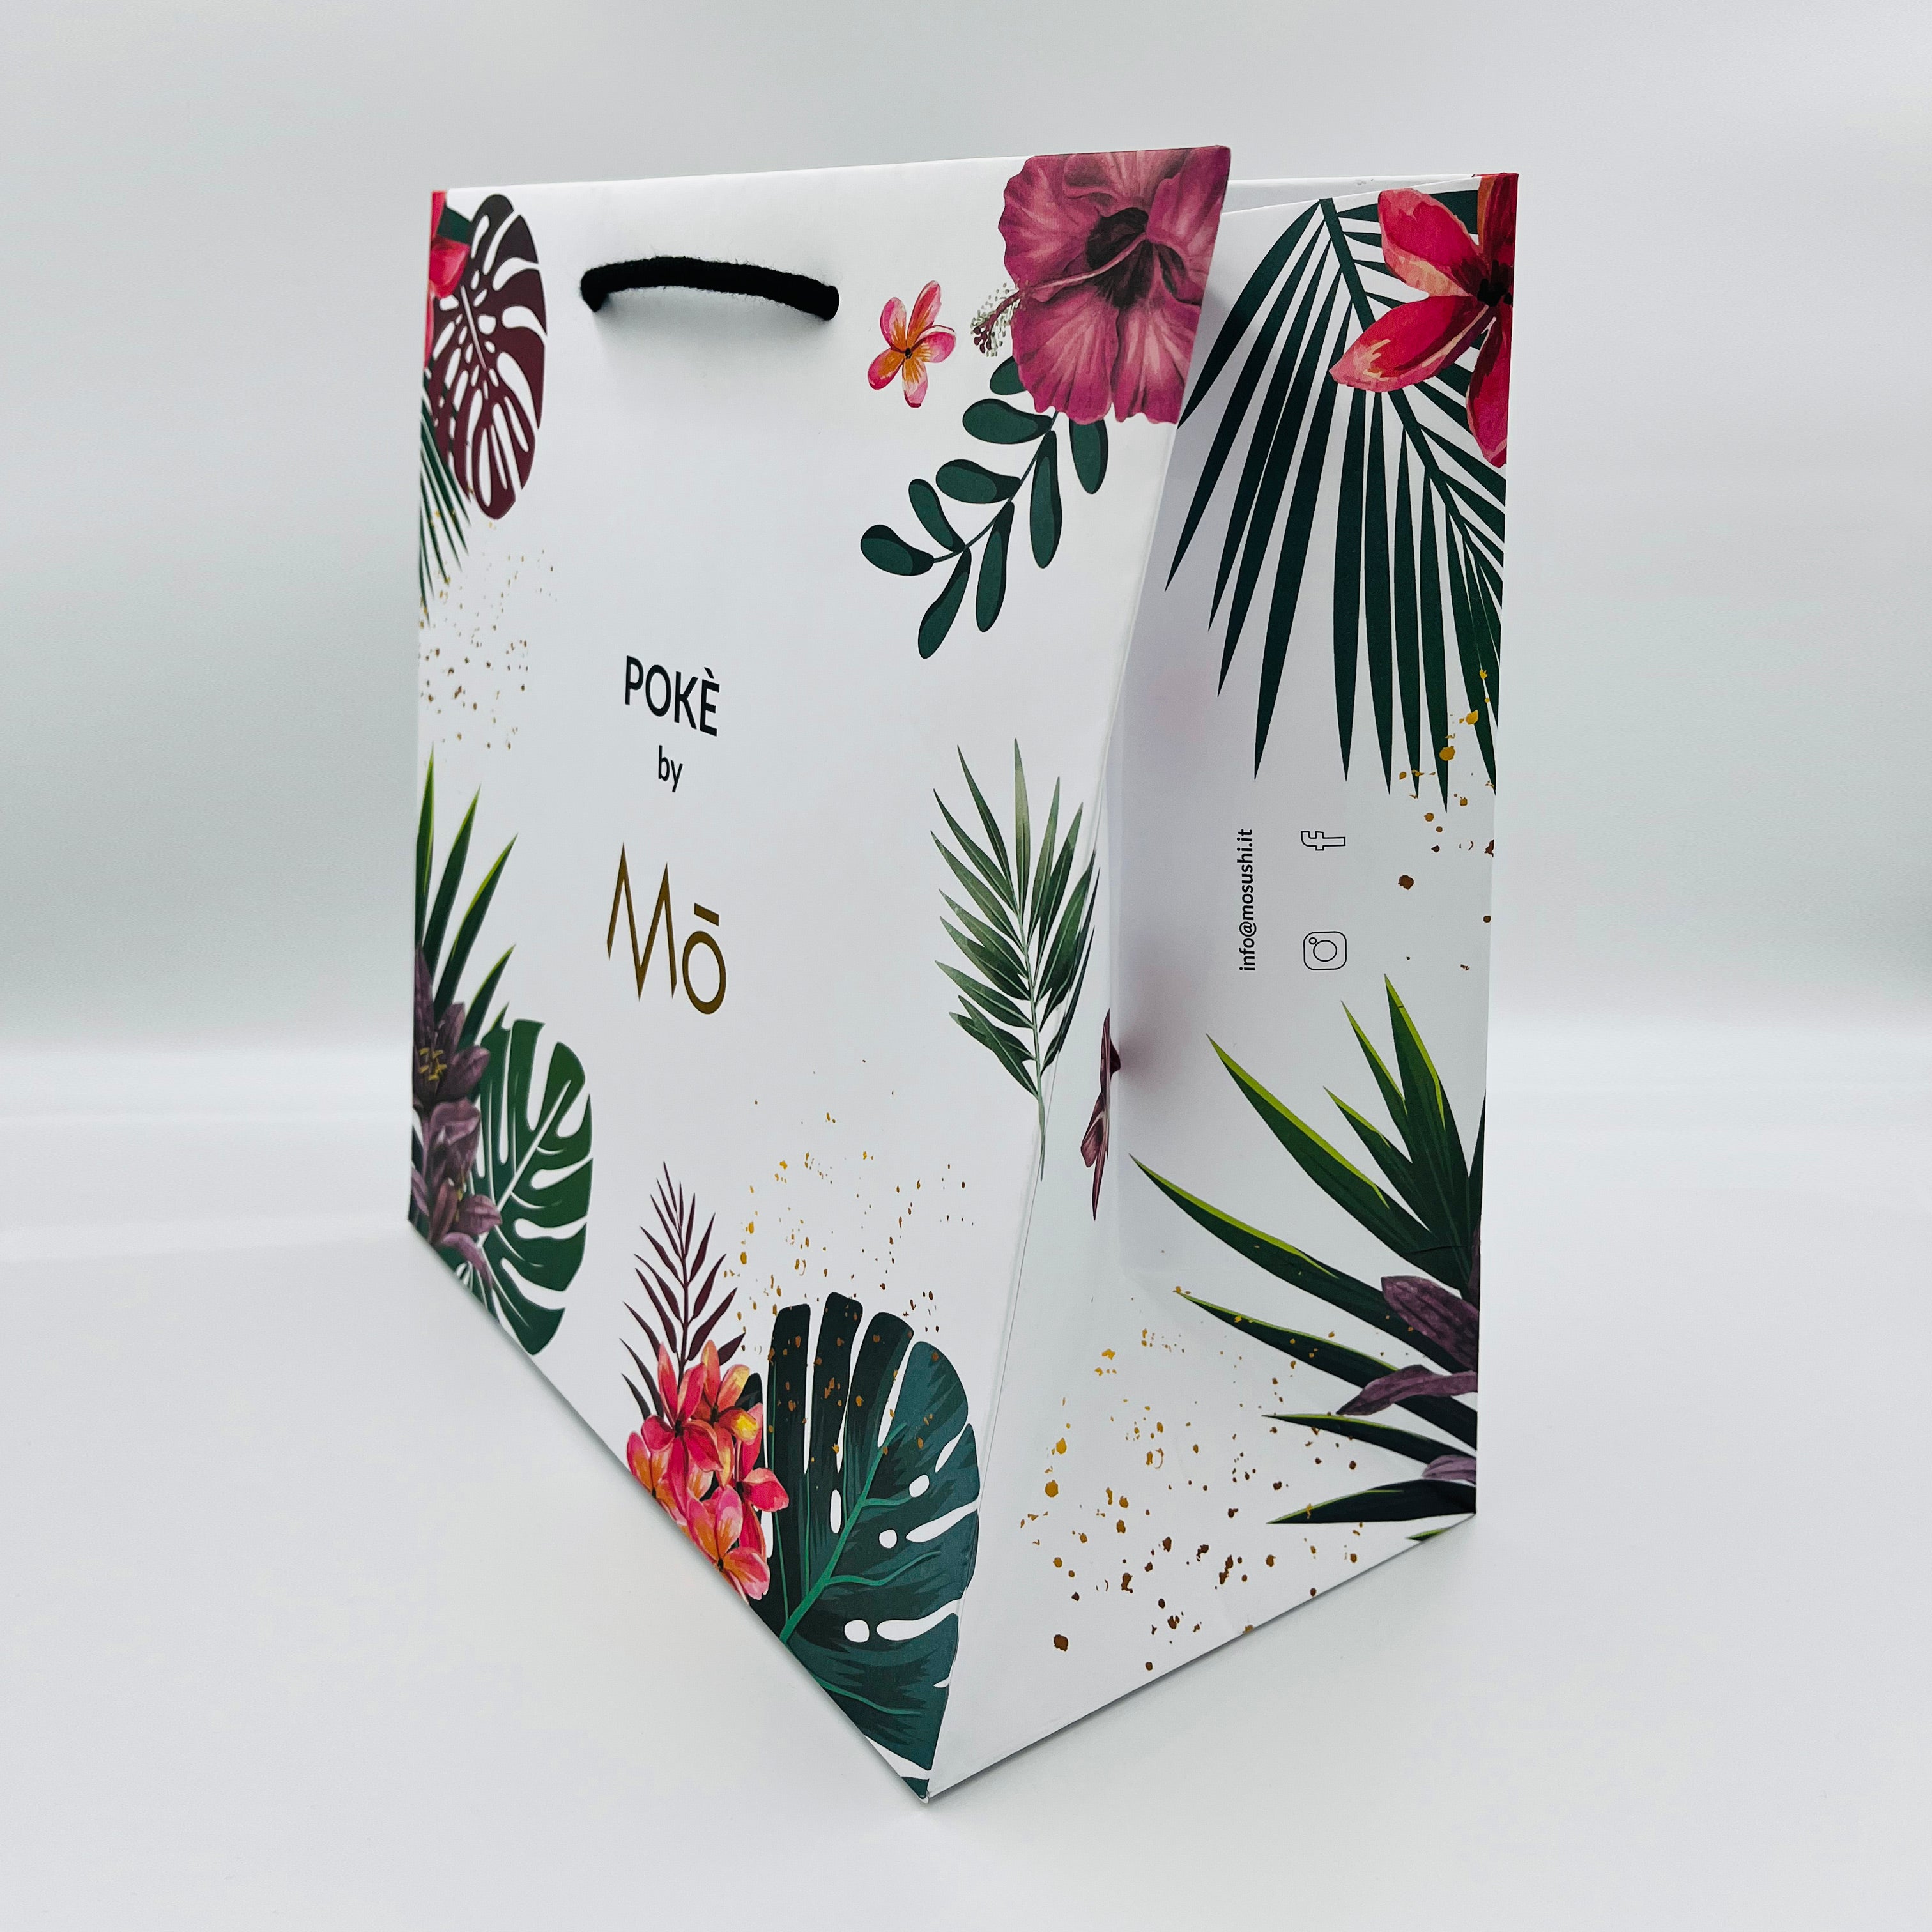 Shopping Bag Boutique senza plastificazione - stampa offset 4 colori su intera superficie